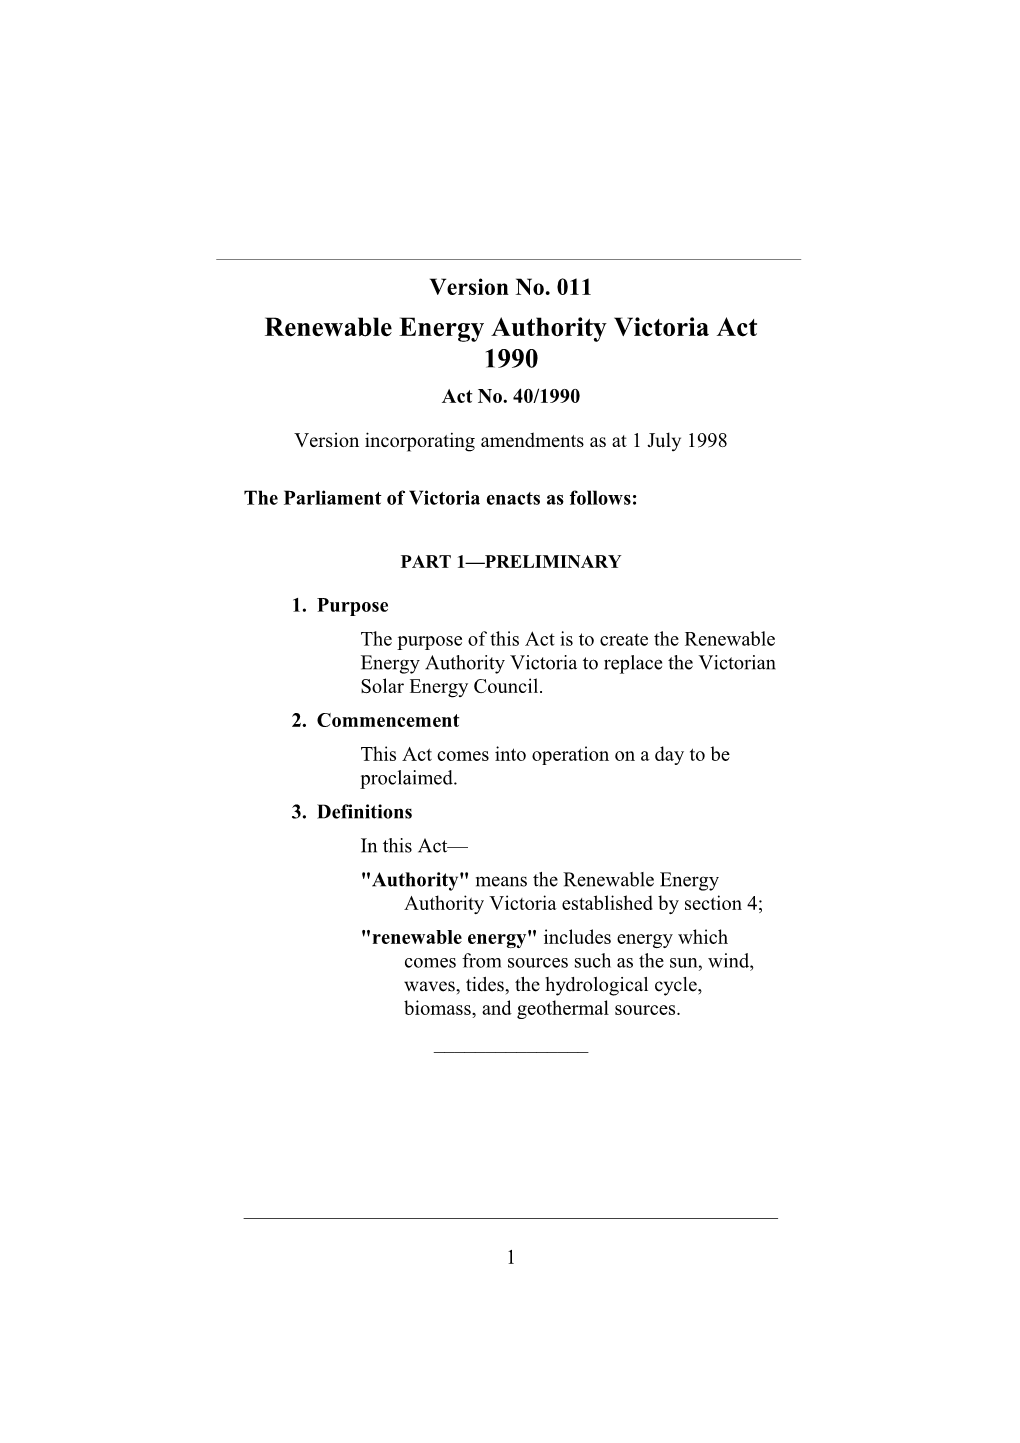 Renewable Energy Authority Victoria Act 1990